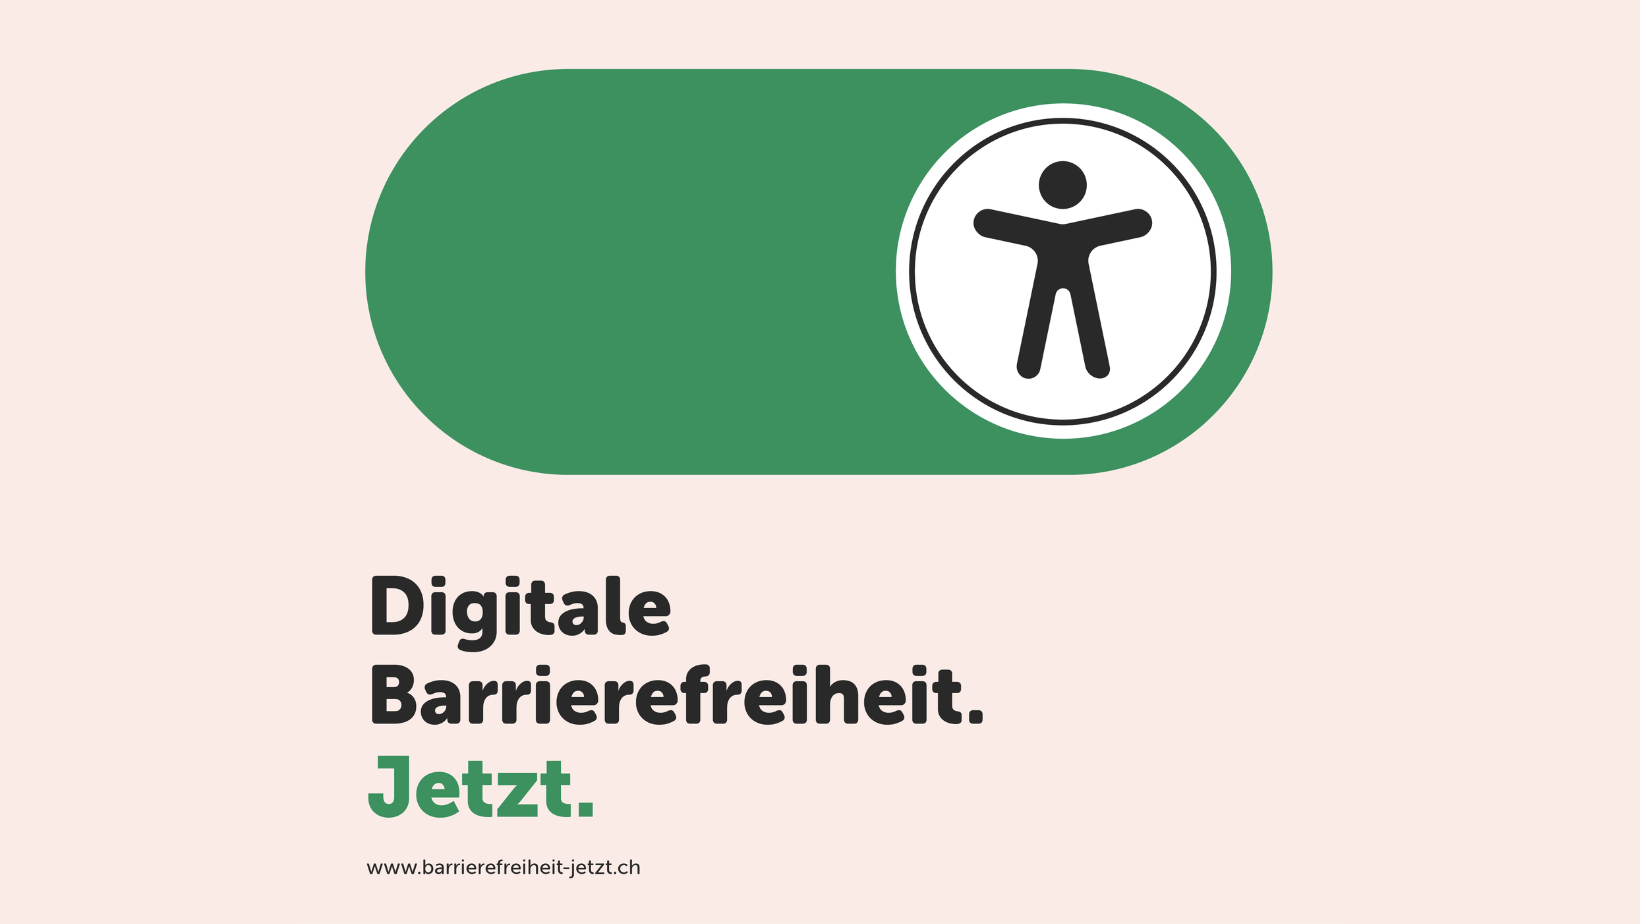 Der Schriftzug der Kampagne: "Digitale Barrierefreiheit. Jetzt."